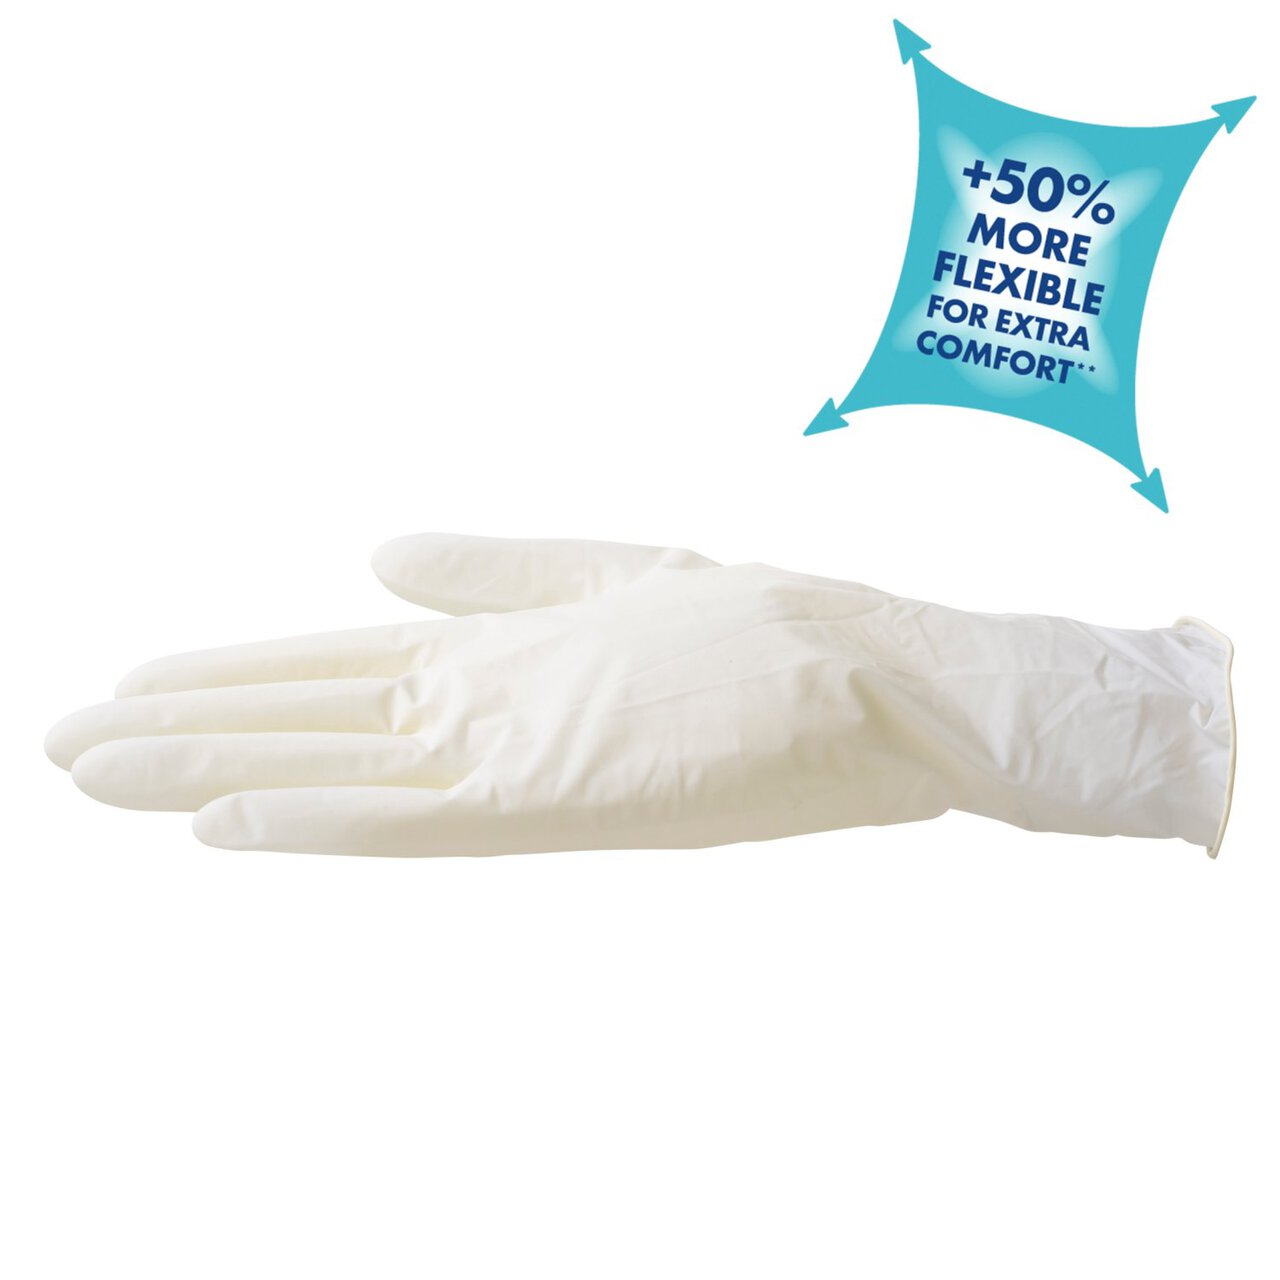 Spontex Comfortable Latex Disposable Gloves 40 per pack